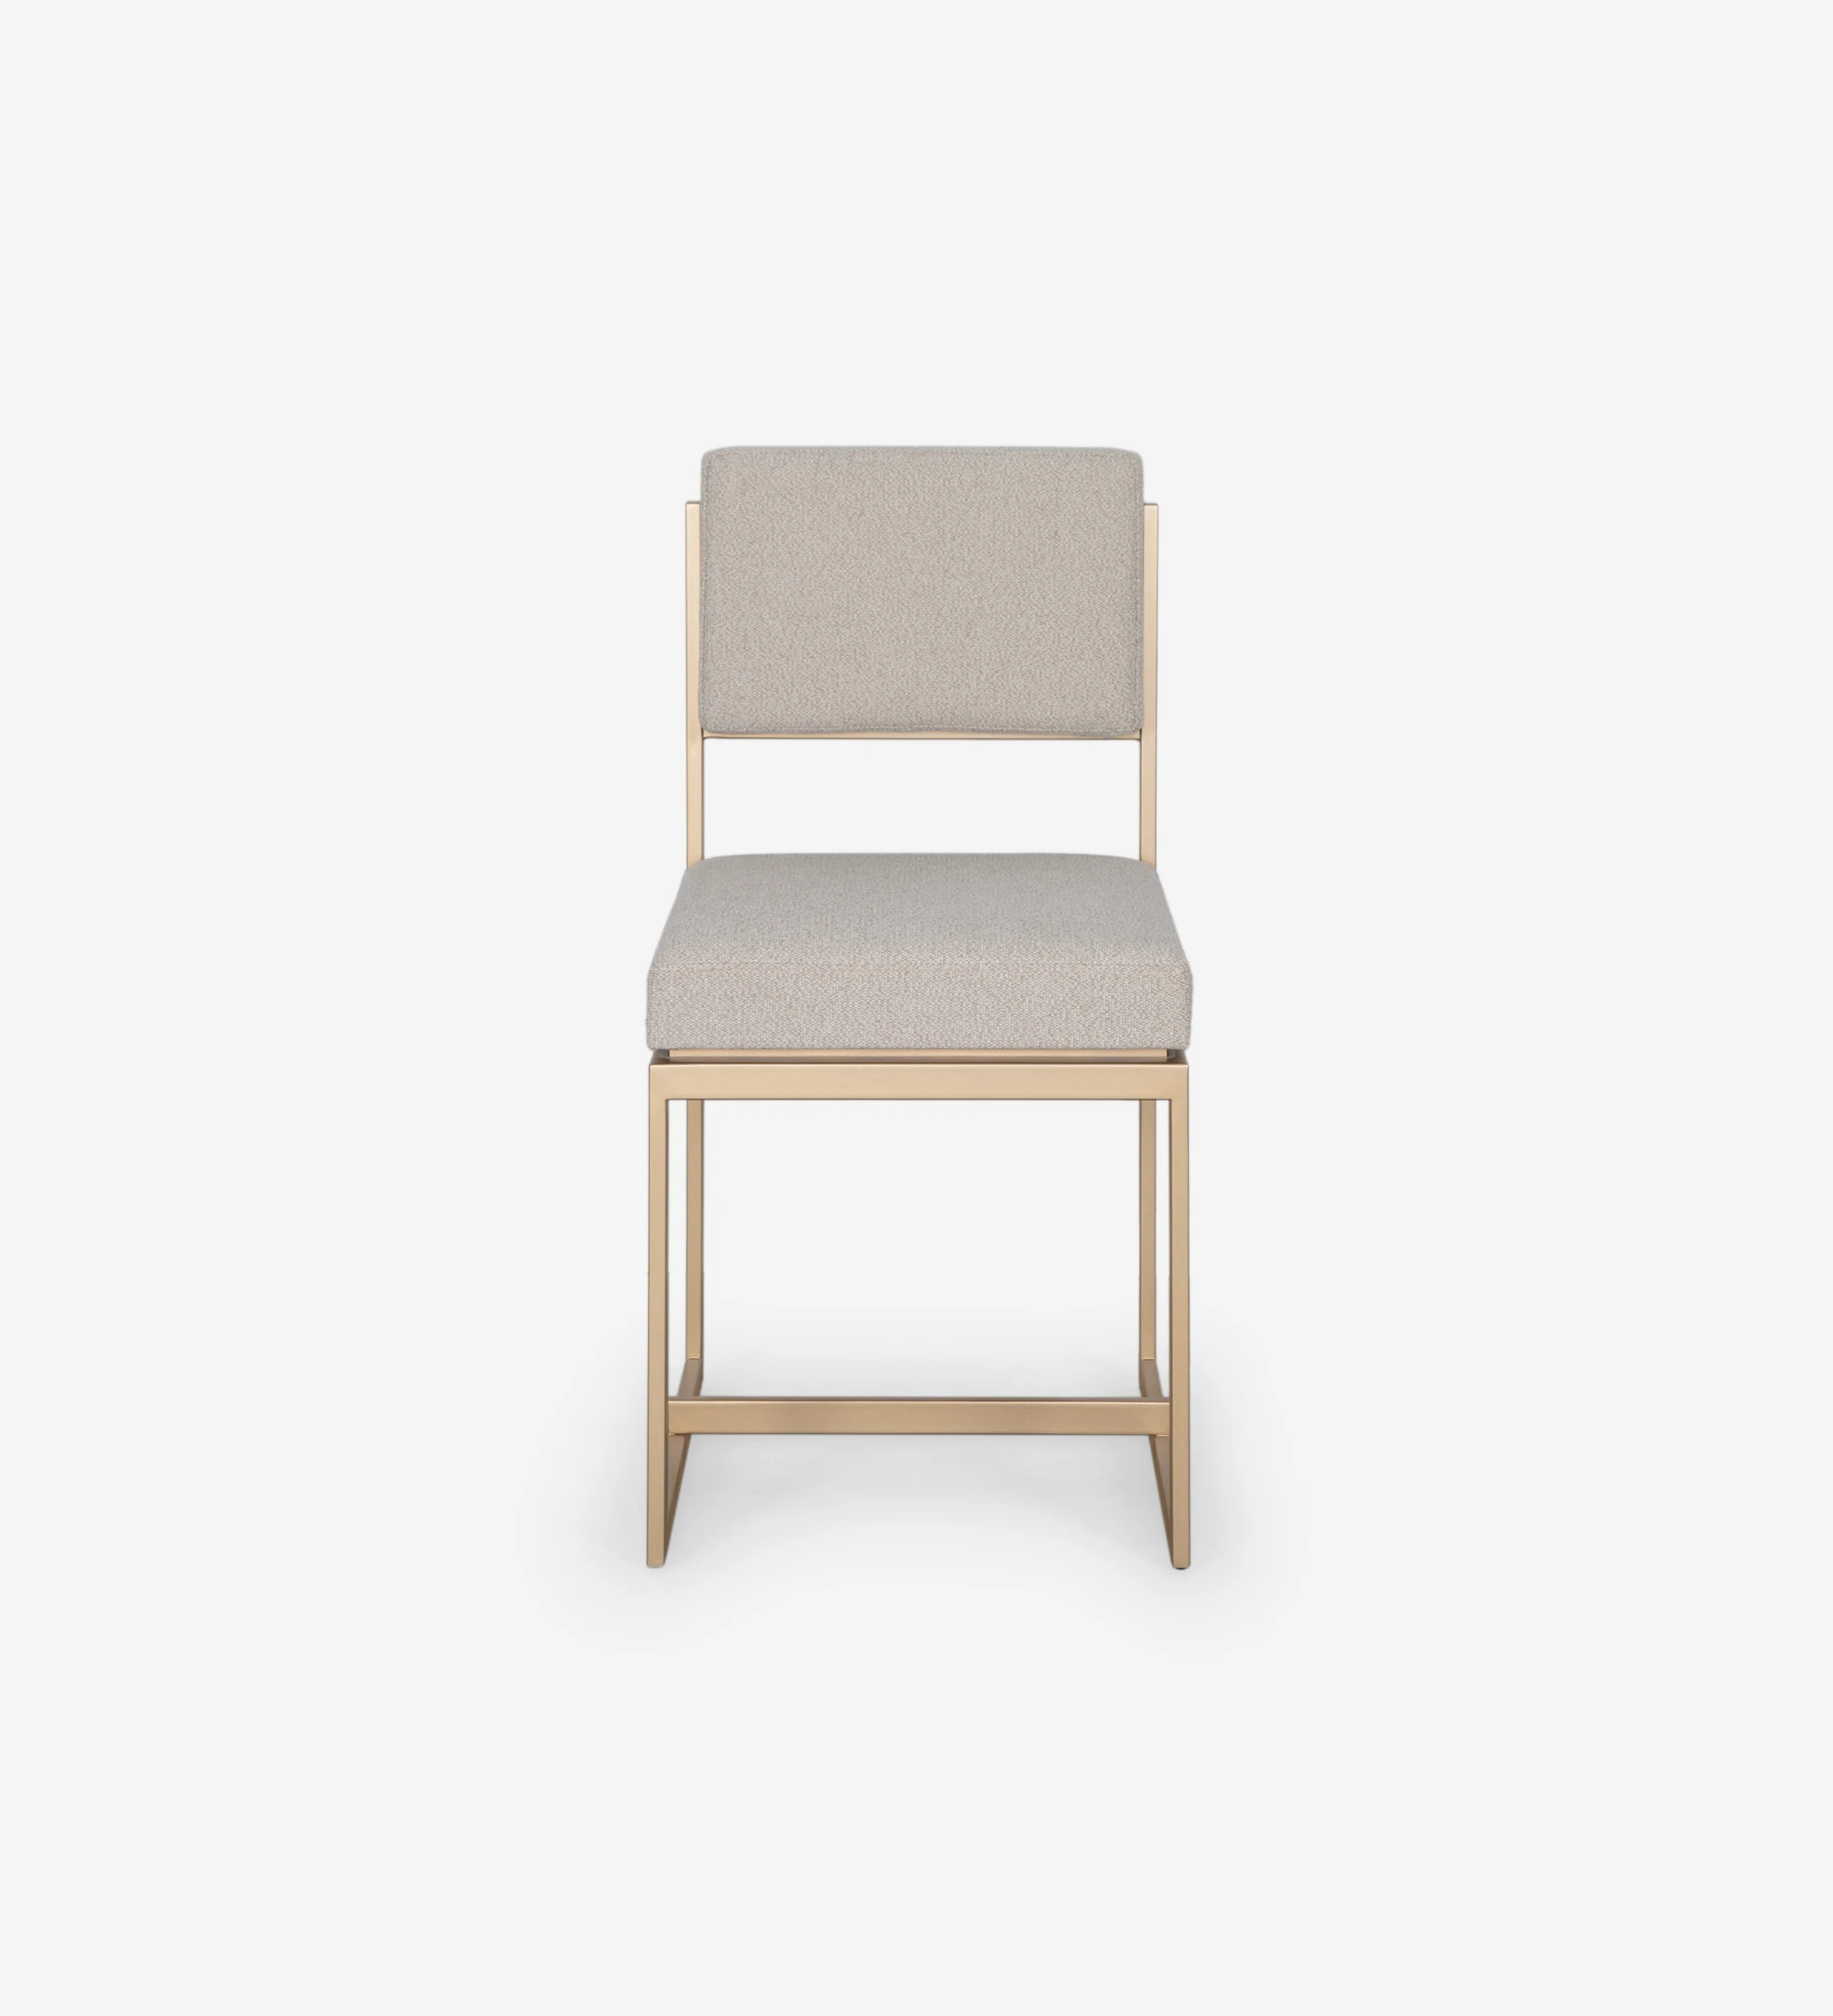 Chaise avec assise et dossier recouverts de tissu, avec structure en métal laqué doré